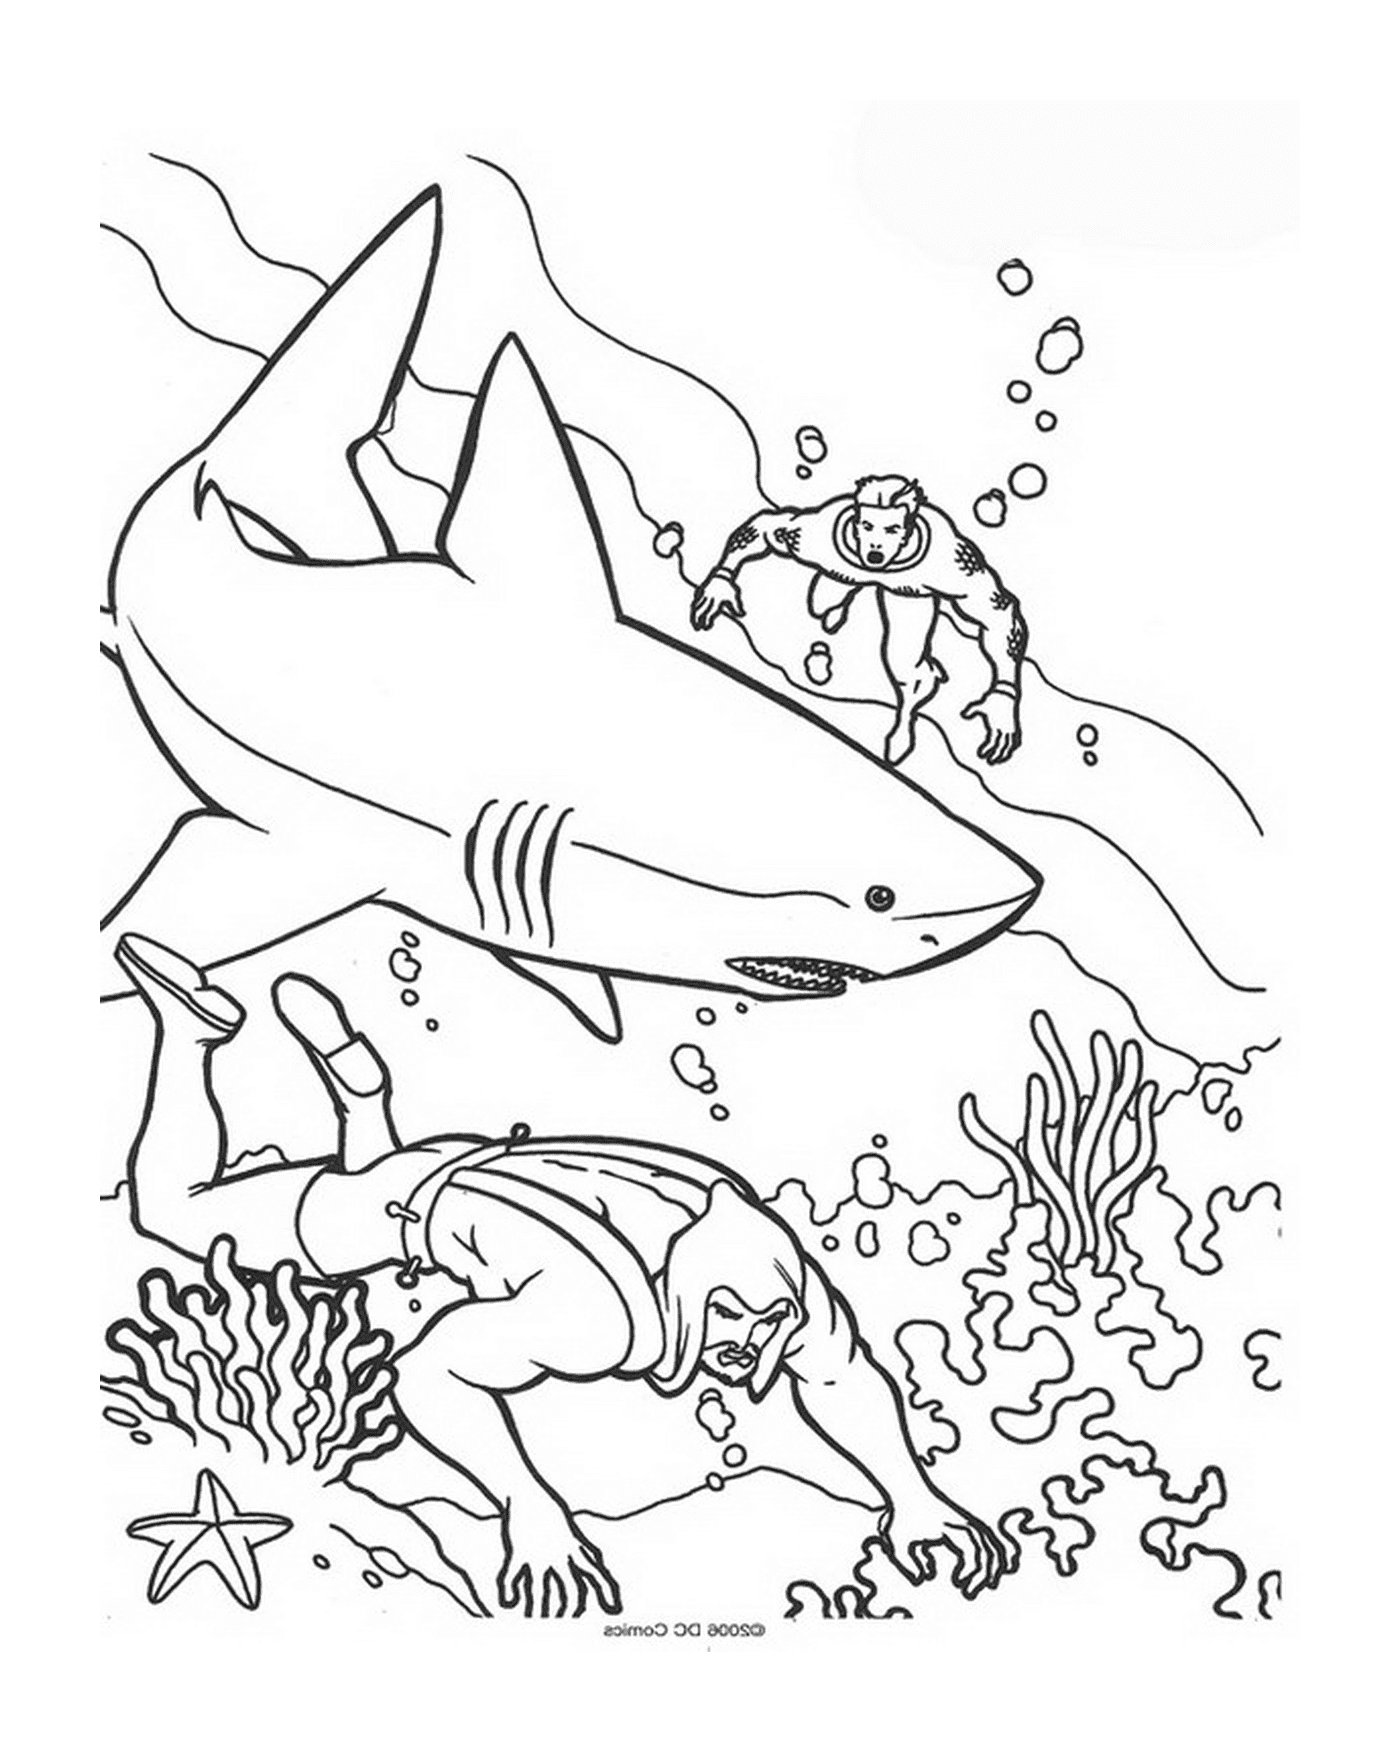  رجل وامرأة يسبحان في المحيط مع أسماك القرش 